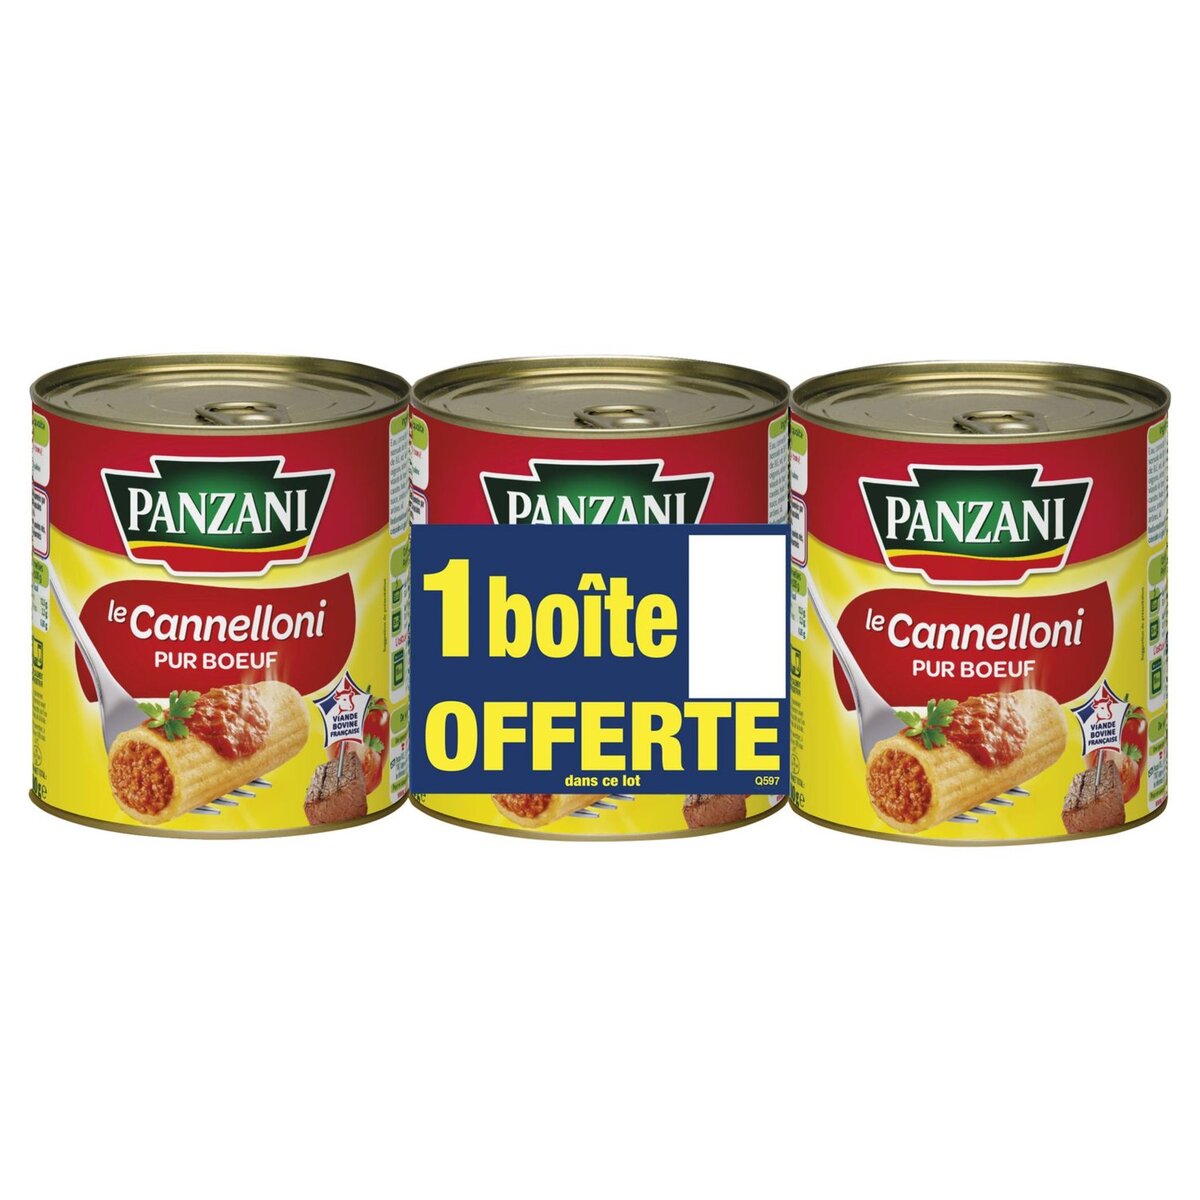 PANZANI Panzani cannelloni pur boeuf cuisiné huile olive 2x800g+1